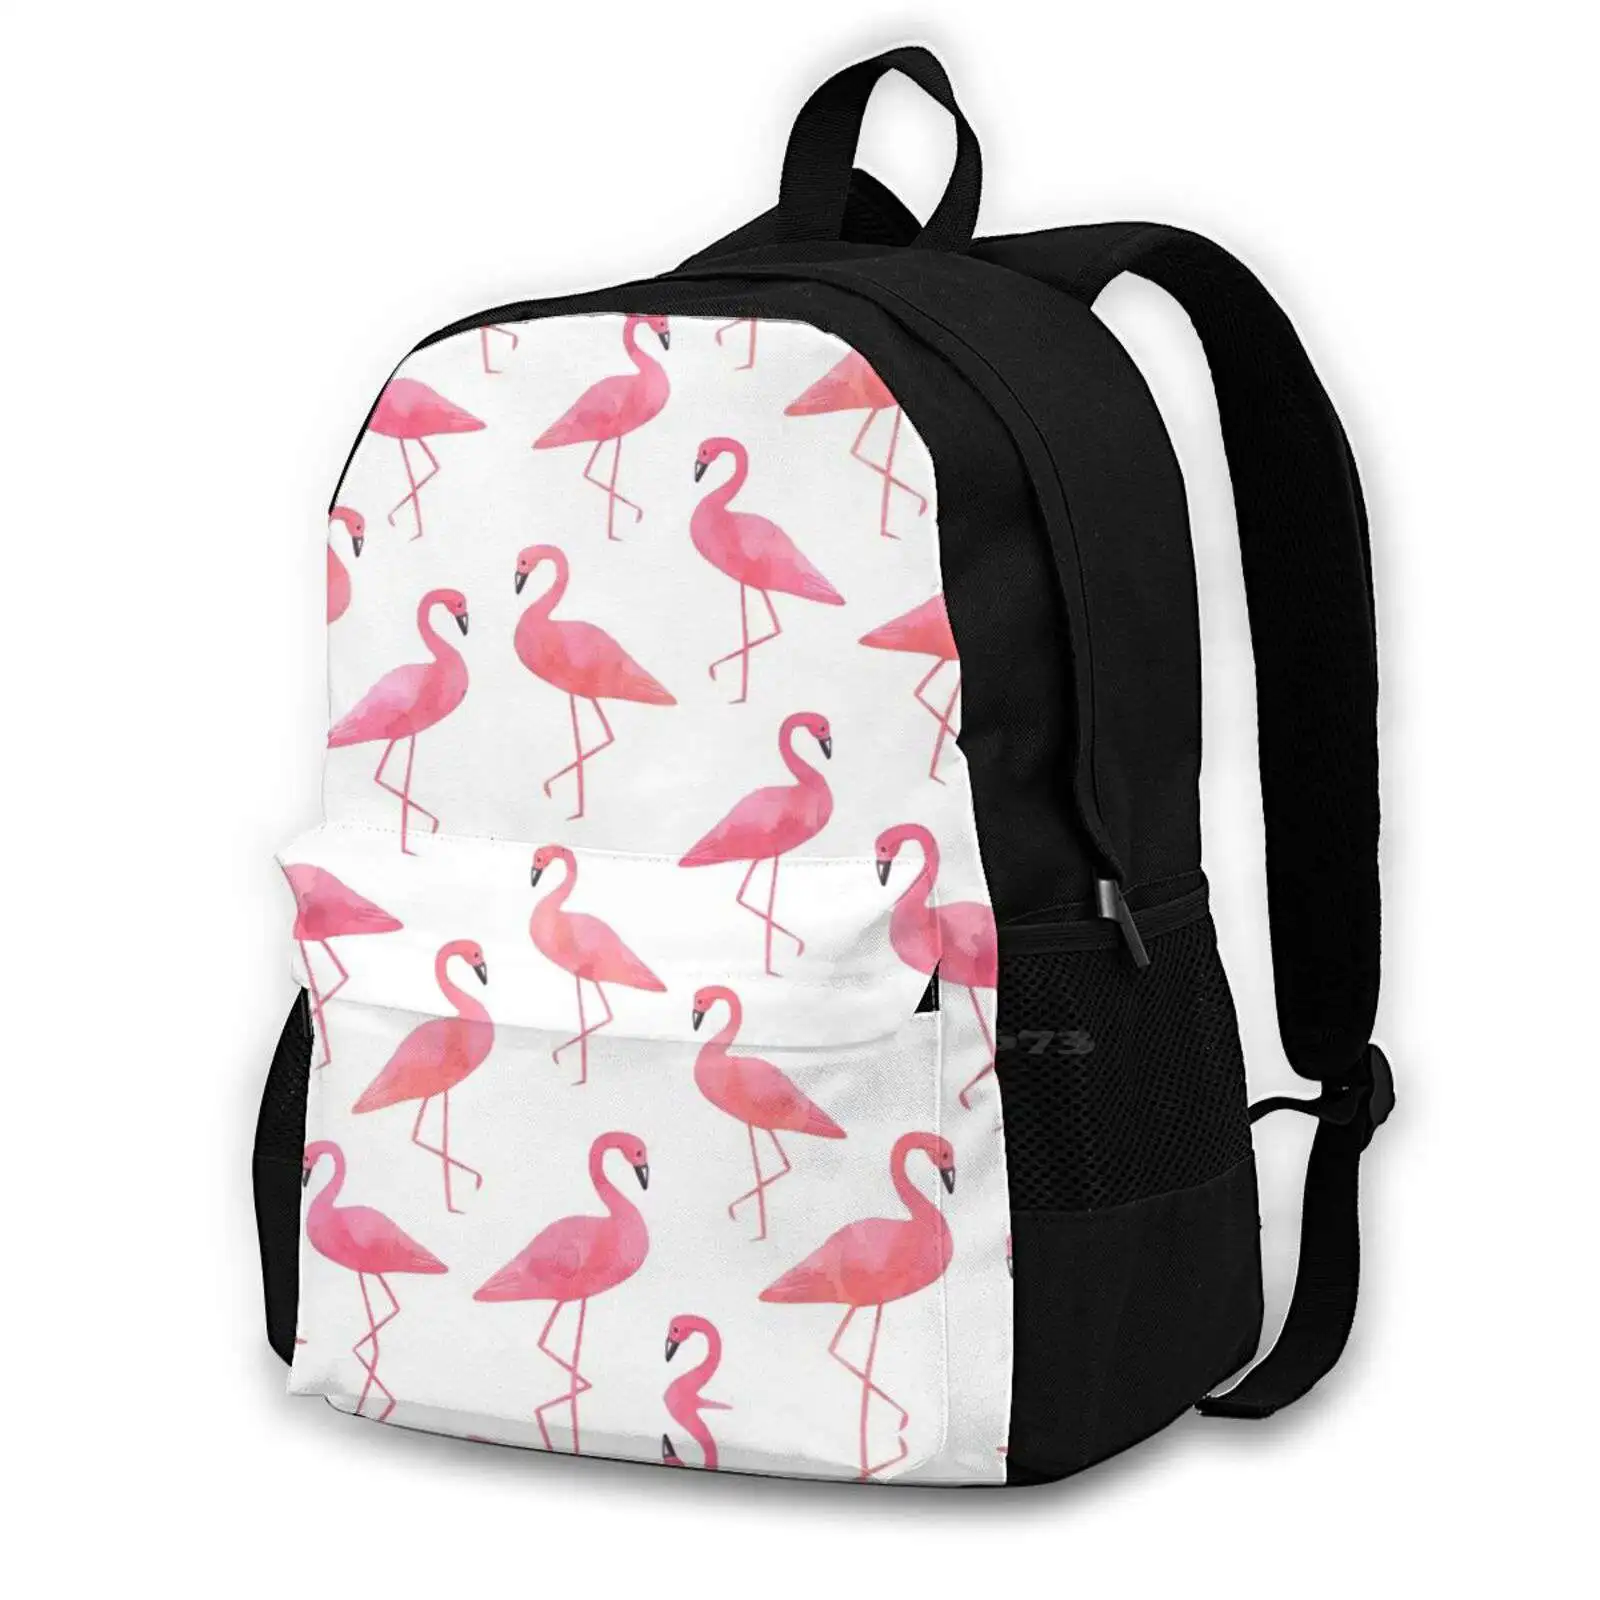 

Рюкзак с 3D-принтом фламинго, Повседневная модная сумка, милые акварельные розовые фламинго